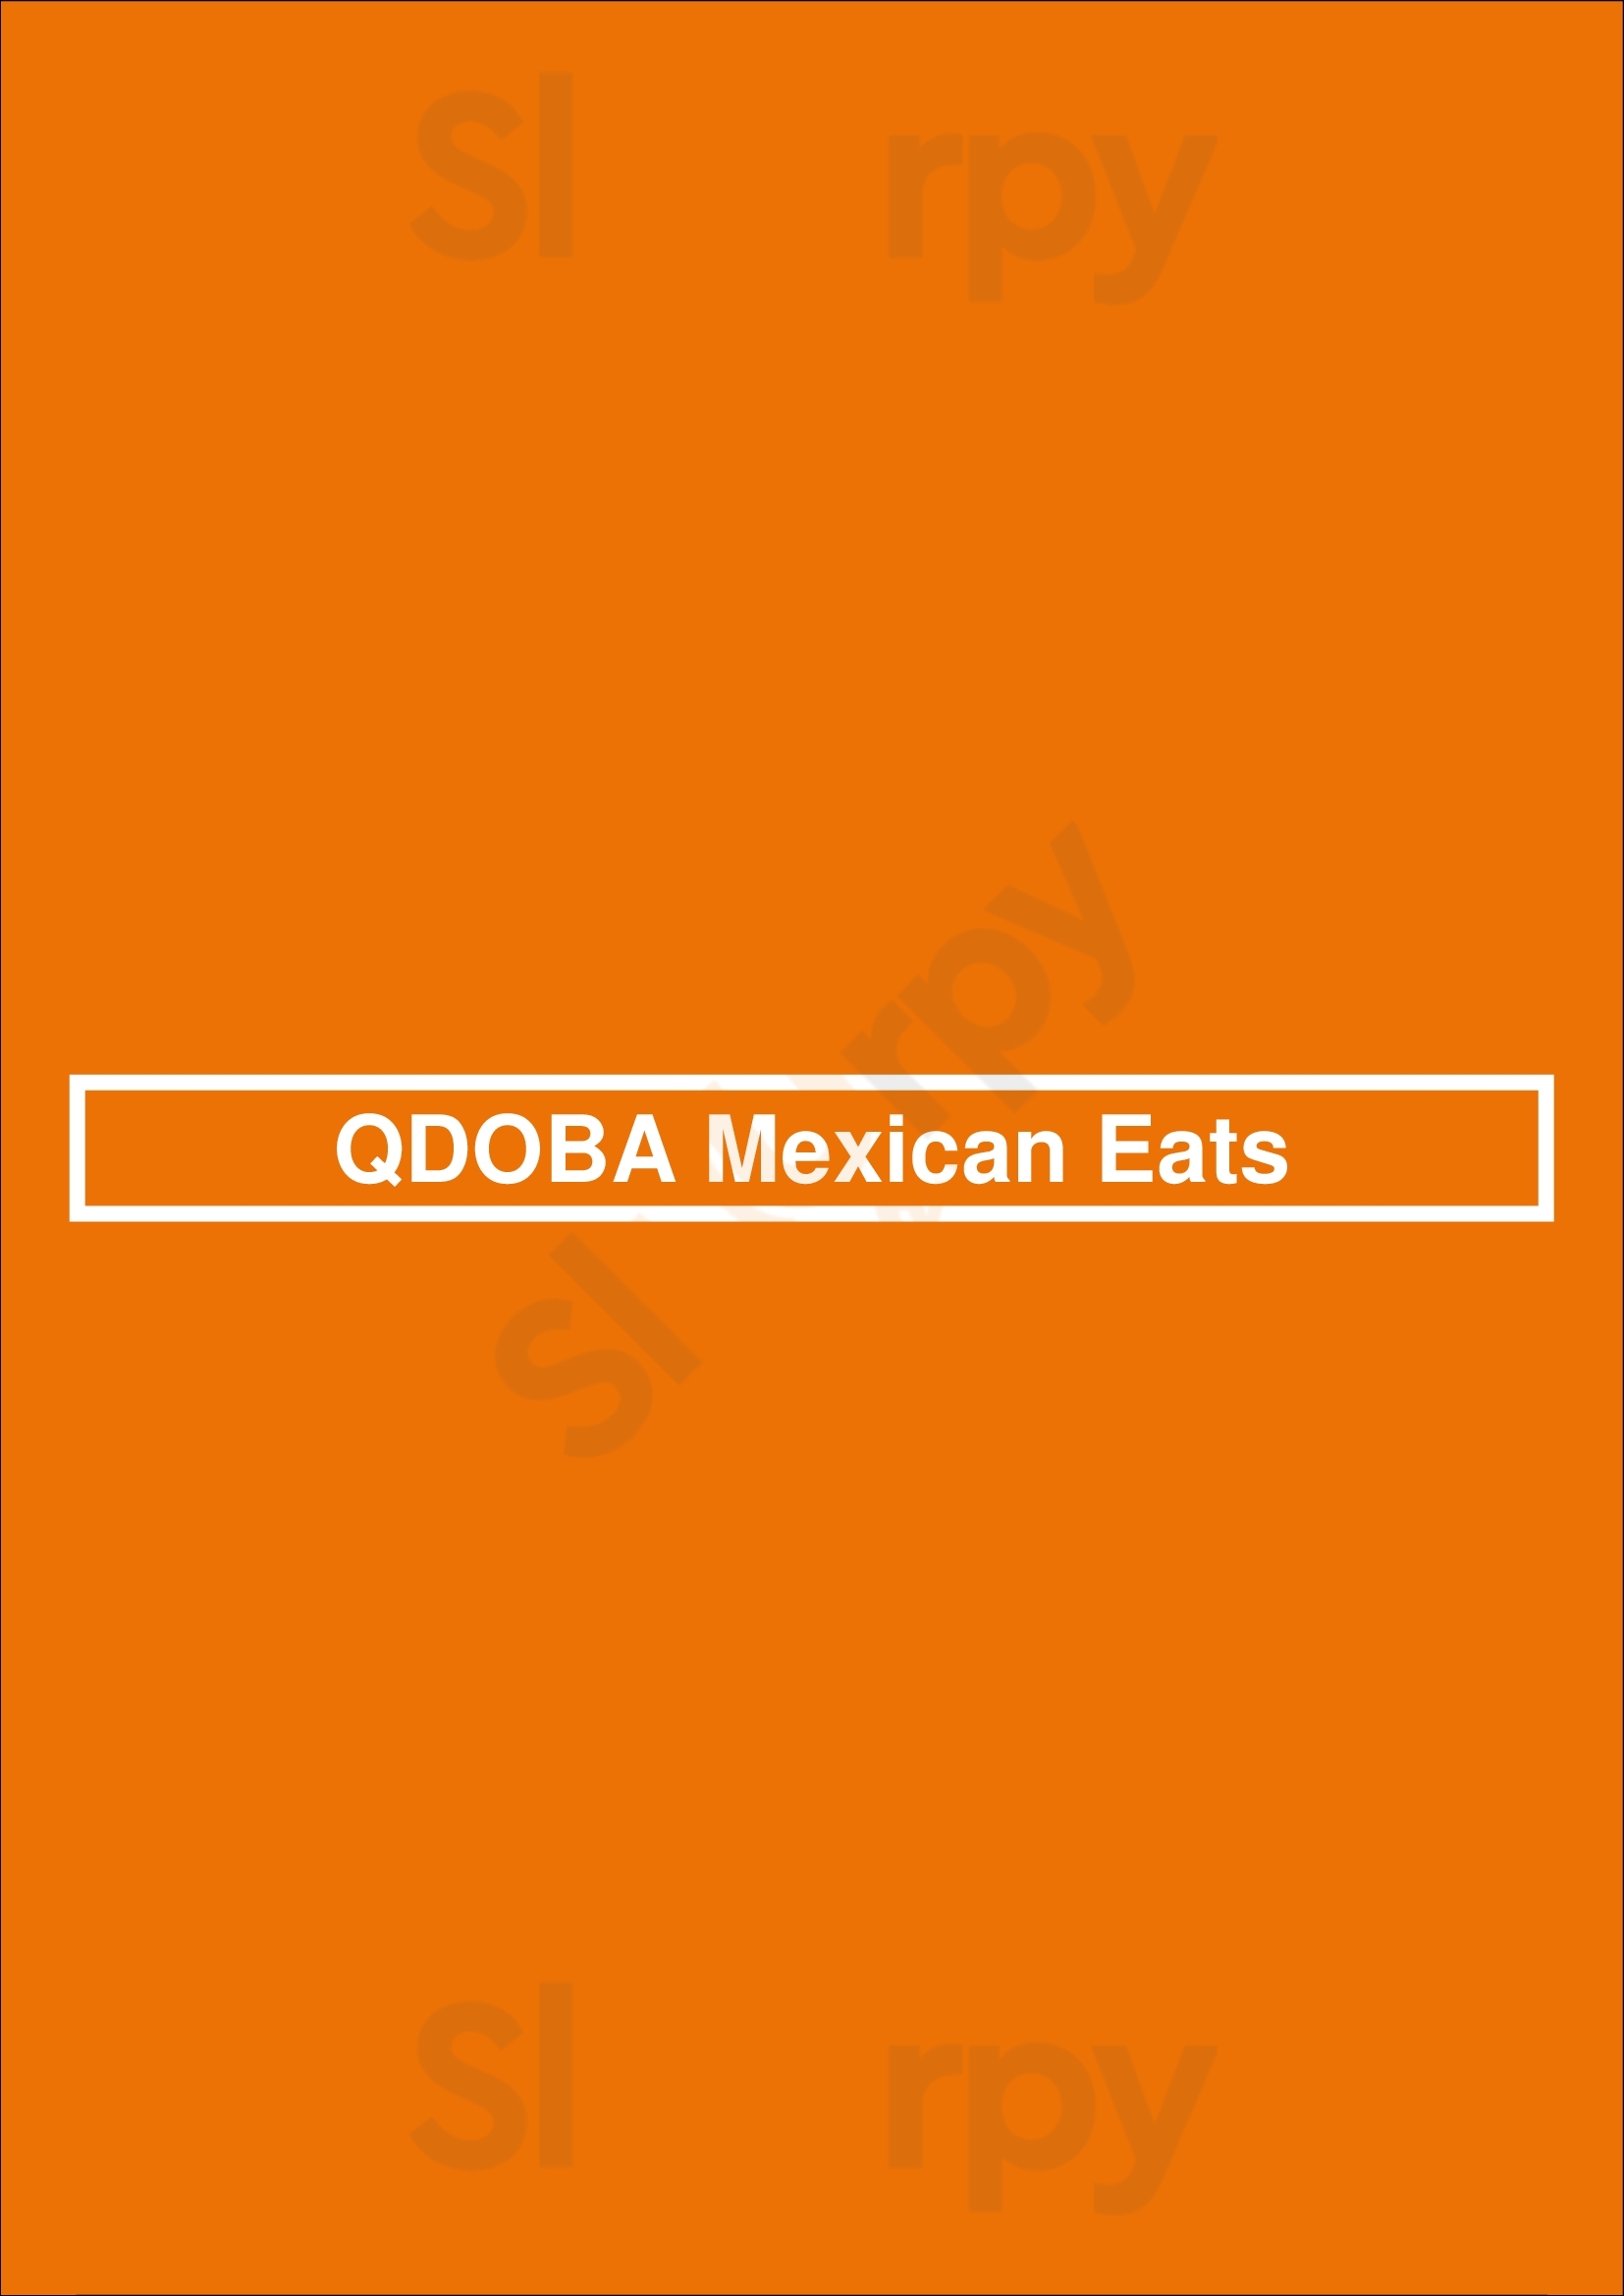 Qdoba Mexican Eats Minneapolis Menu - 1